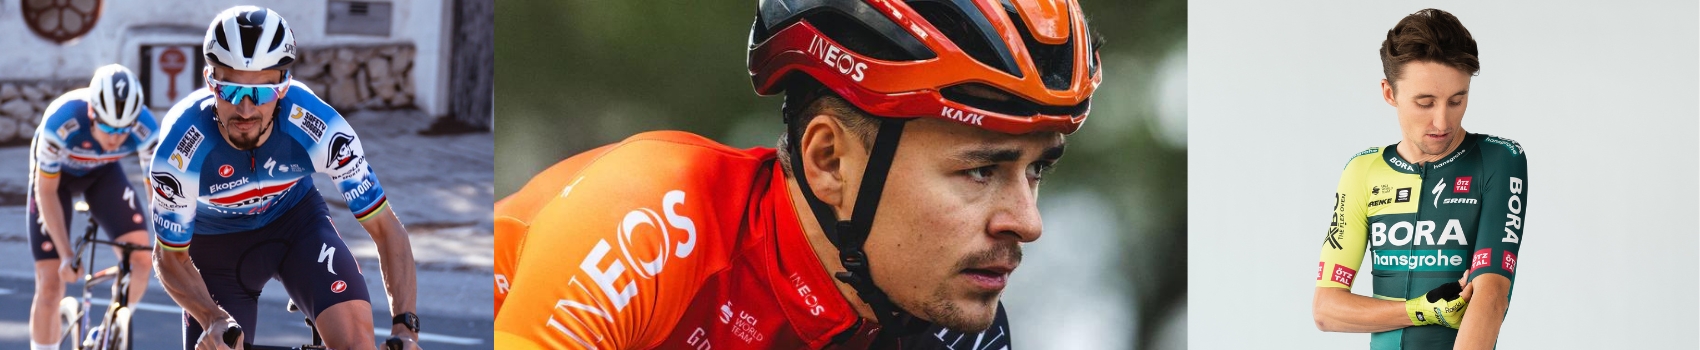 Abbigliamento ciclismo team - Trek: Bici strada, mountainbike e abbigliamento - Kask: Caschi per il ciclismo - Uomo